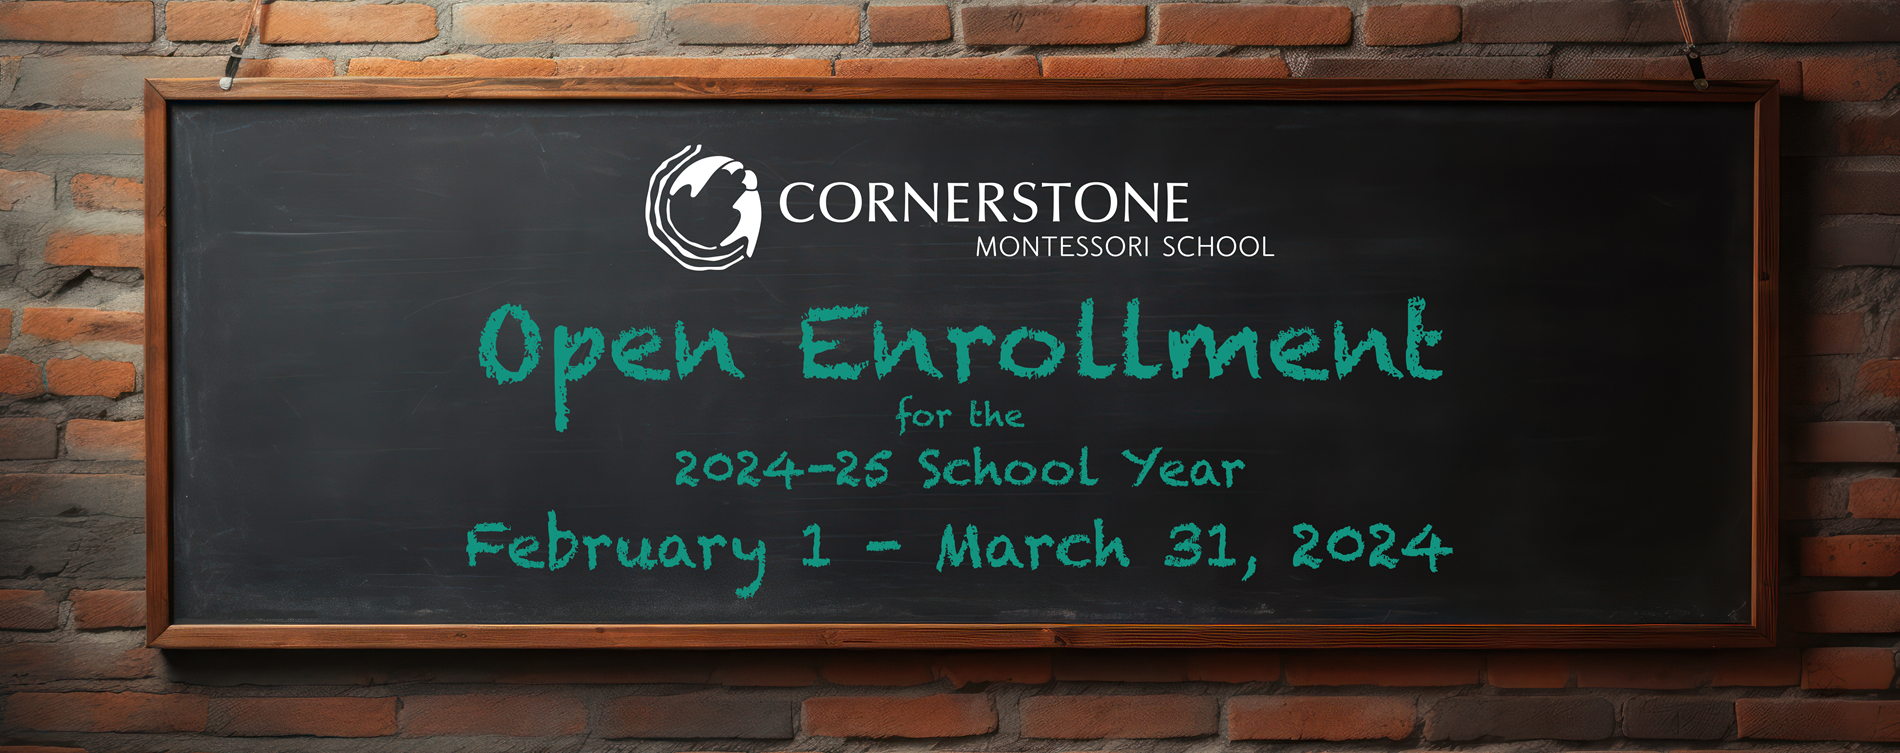 Open Enrollment 24-25